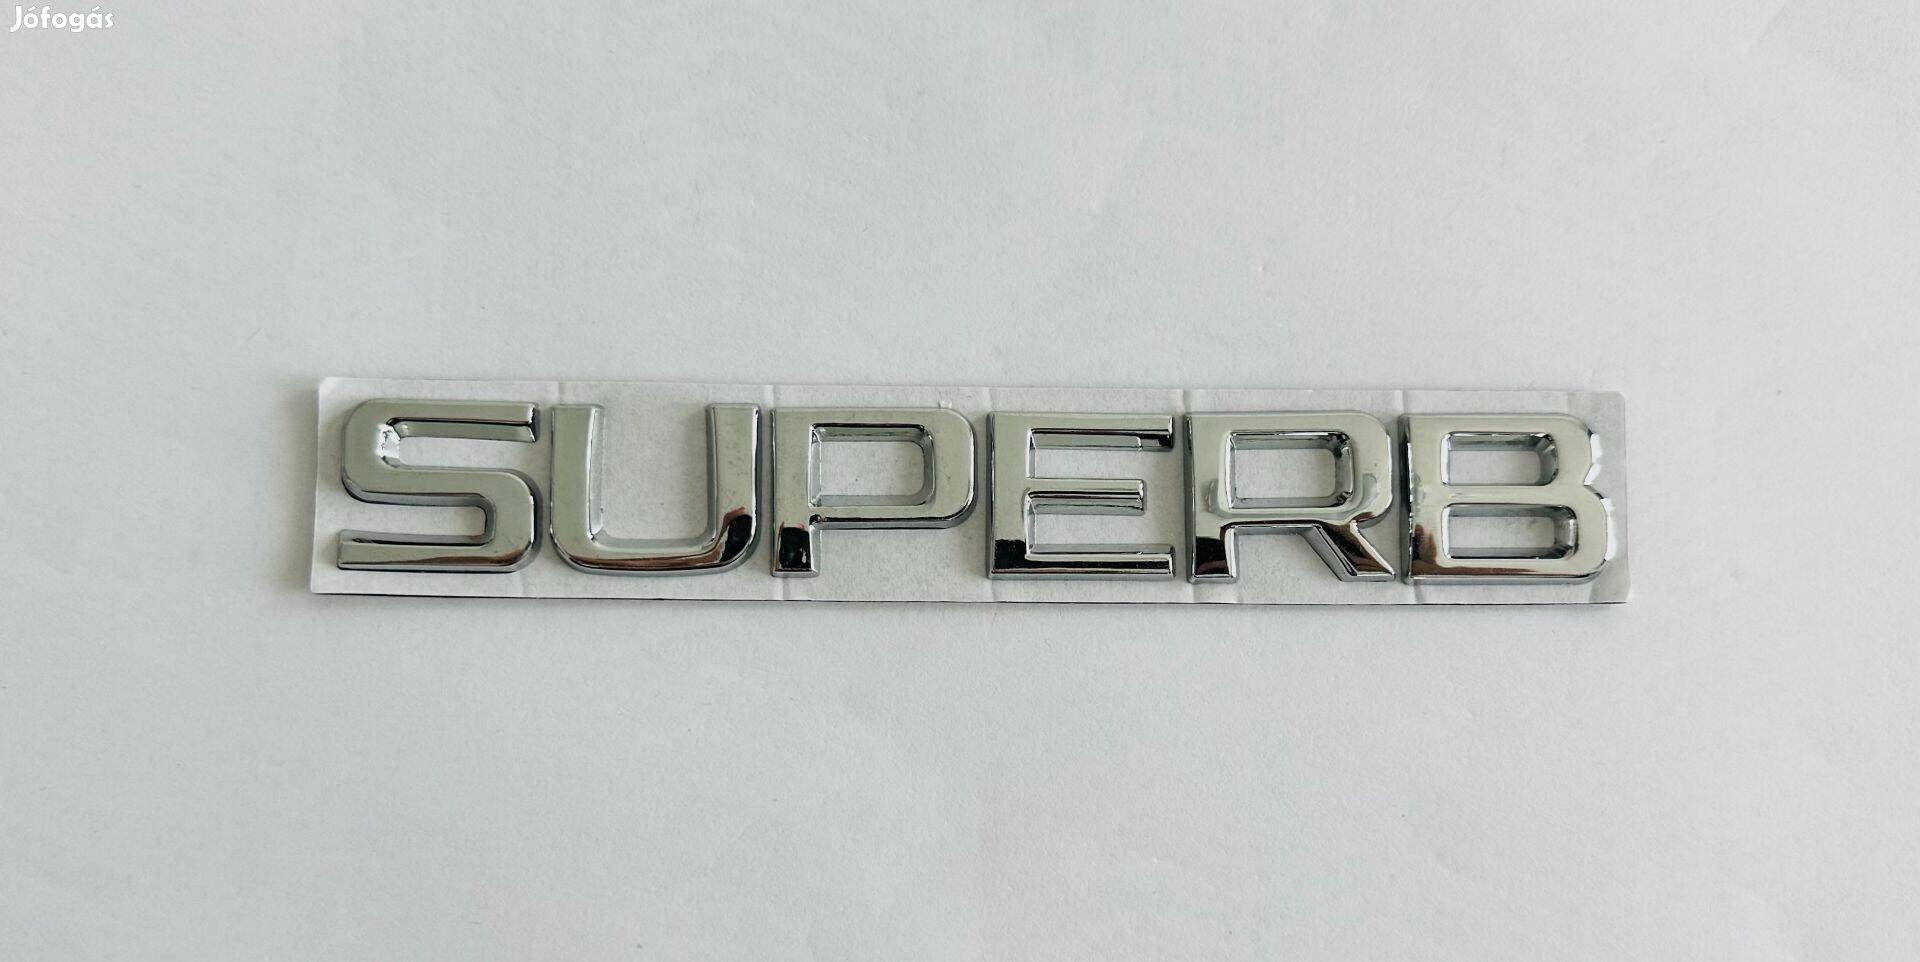 Új Skoda Superb felirat embléma jel logó kiegészítő gépház csomagtér